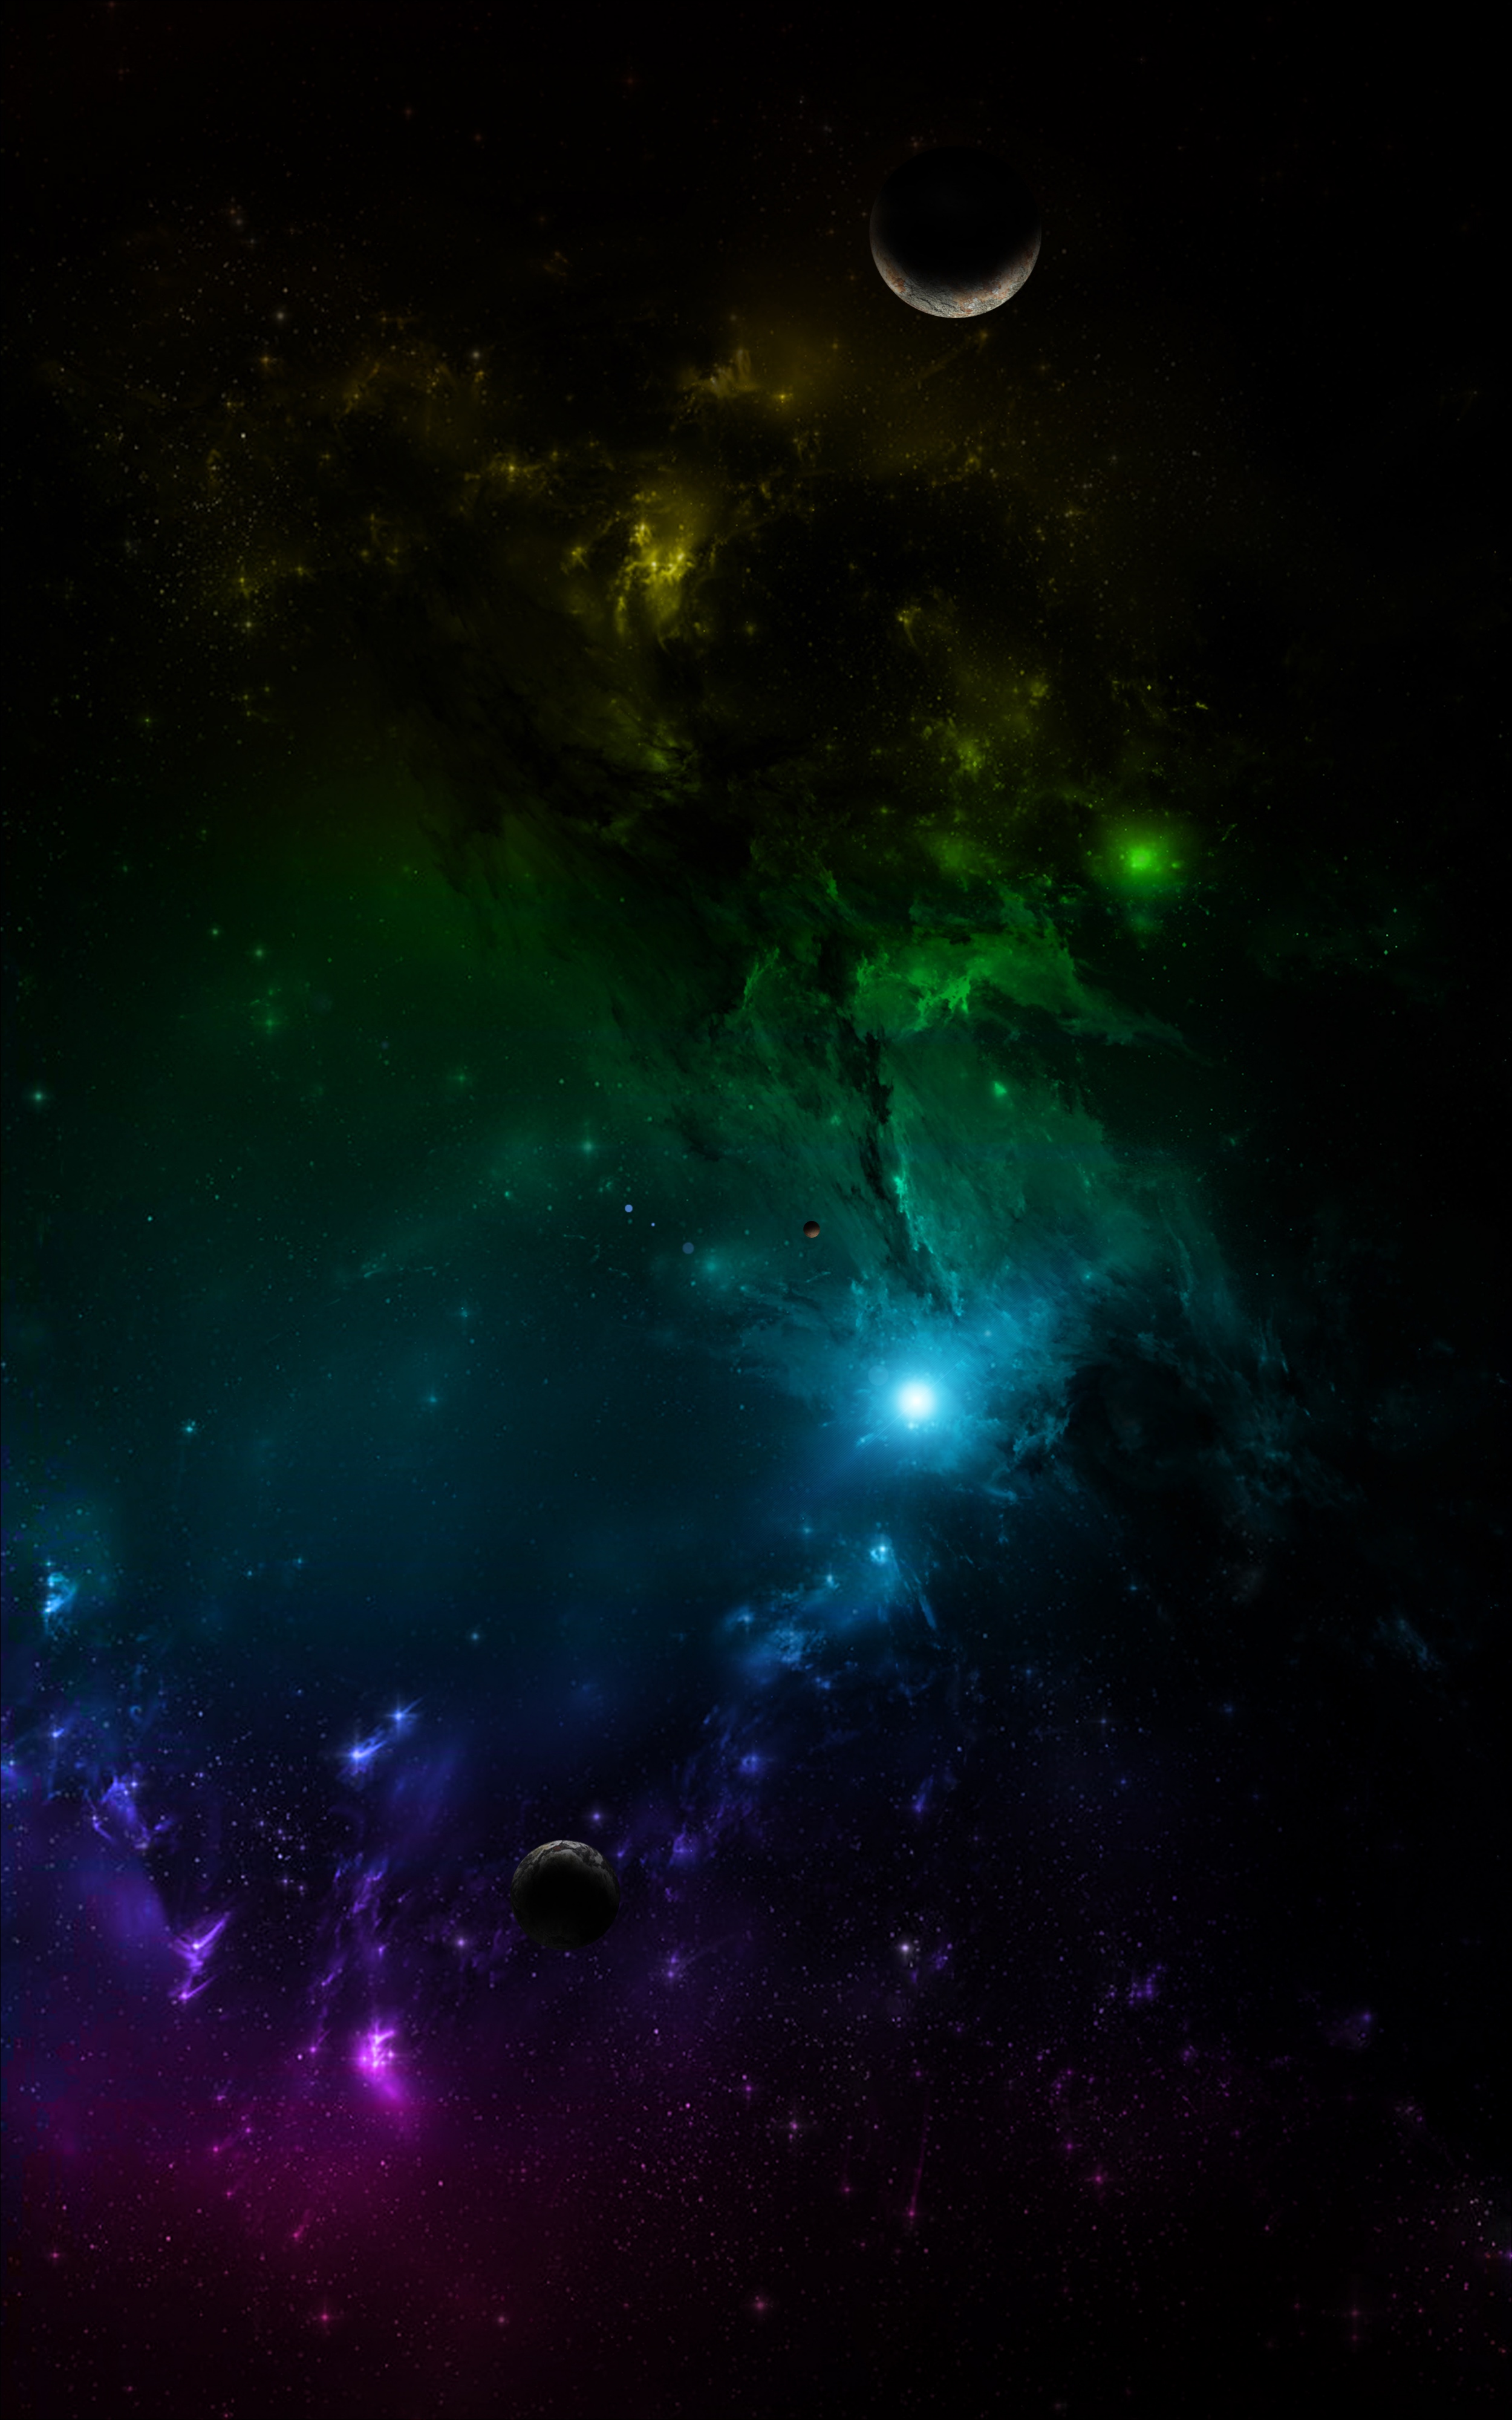 Descarga gratuita de fondo de pantalla para móvil de Abigarrado, Universo, Multicolor, Galaxia, Planetas.